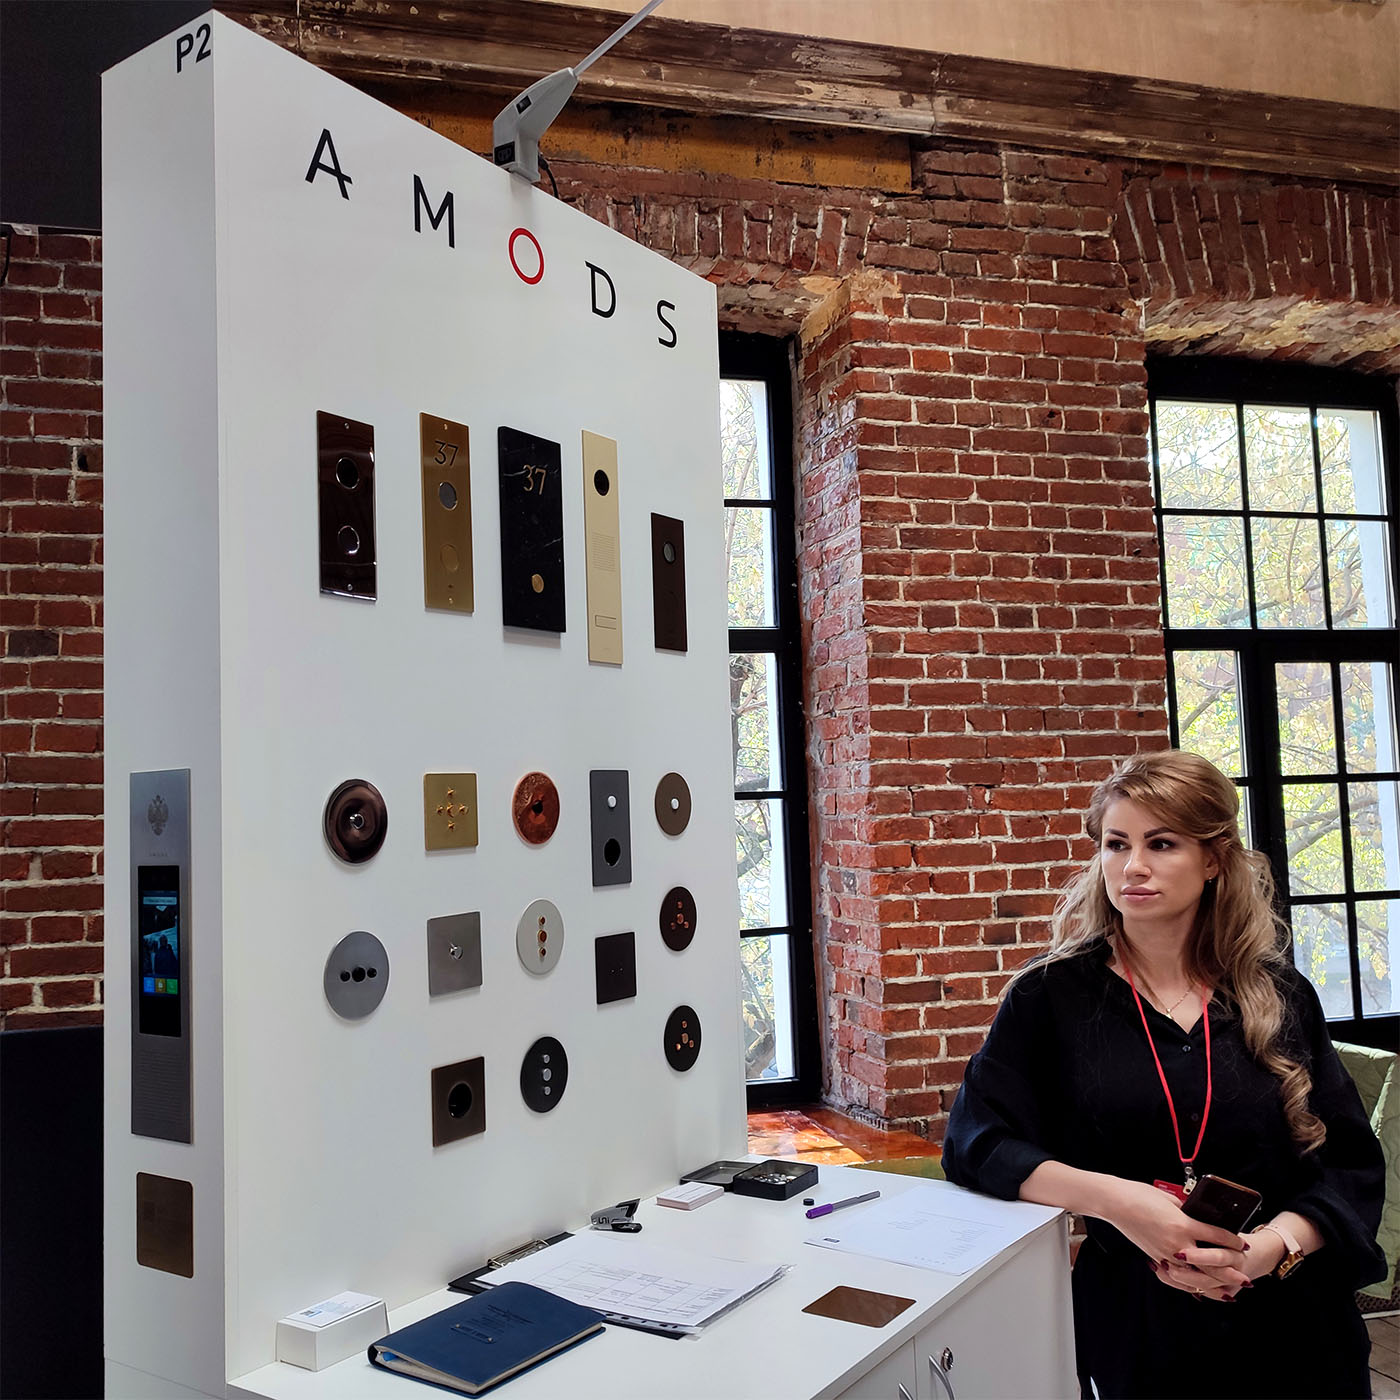 Amods дизайн выключателей и домофонии для ЖК, МКД, умных домов, KNX, Bus77 Hi-Tech Building